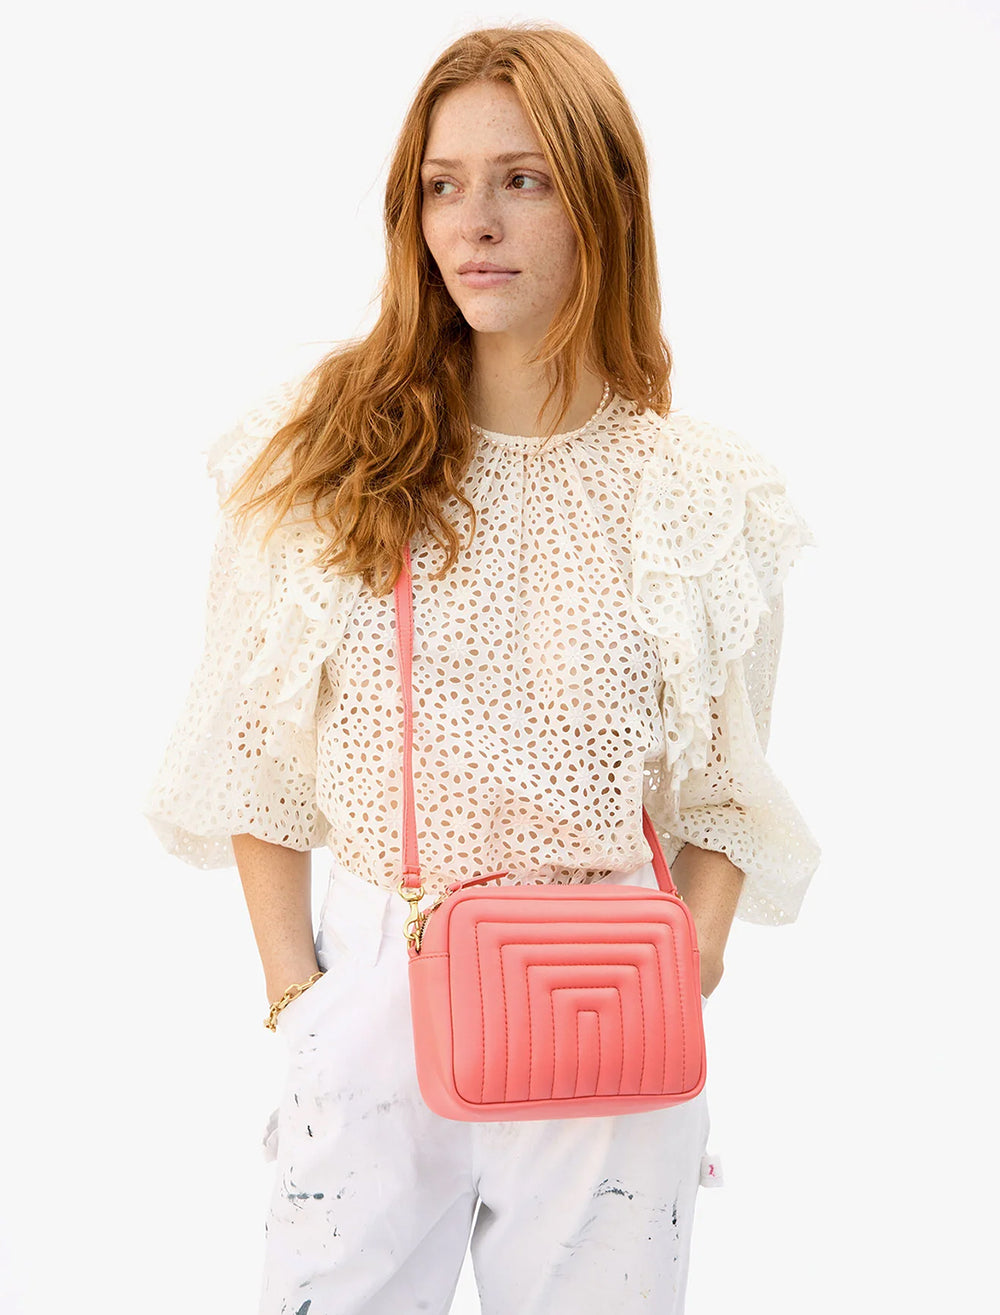 Model wearing Clare V.'s midi sac in bright coral.